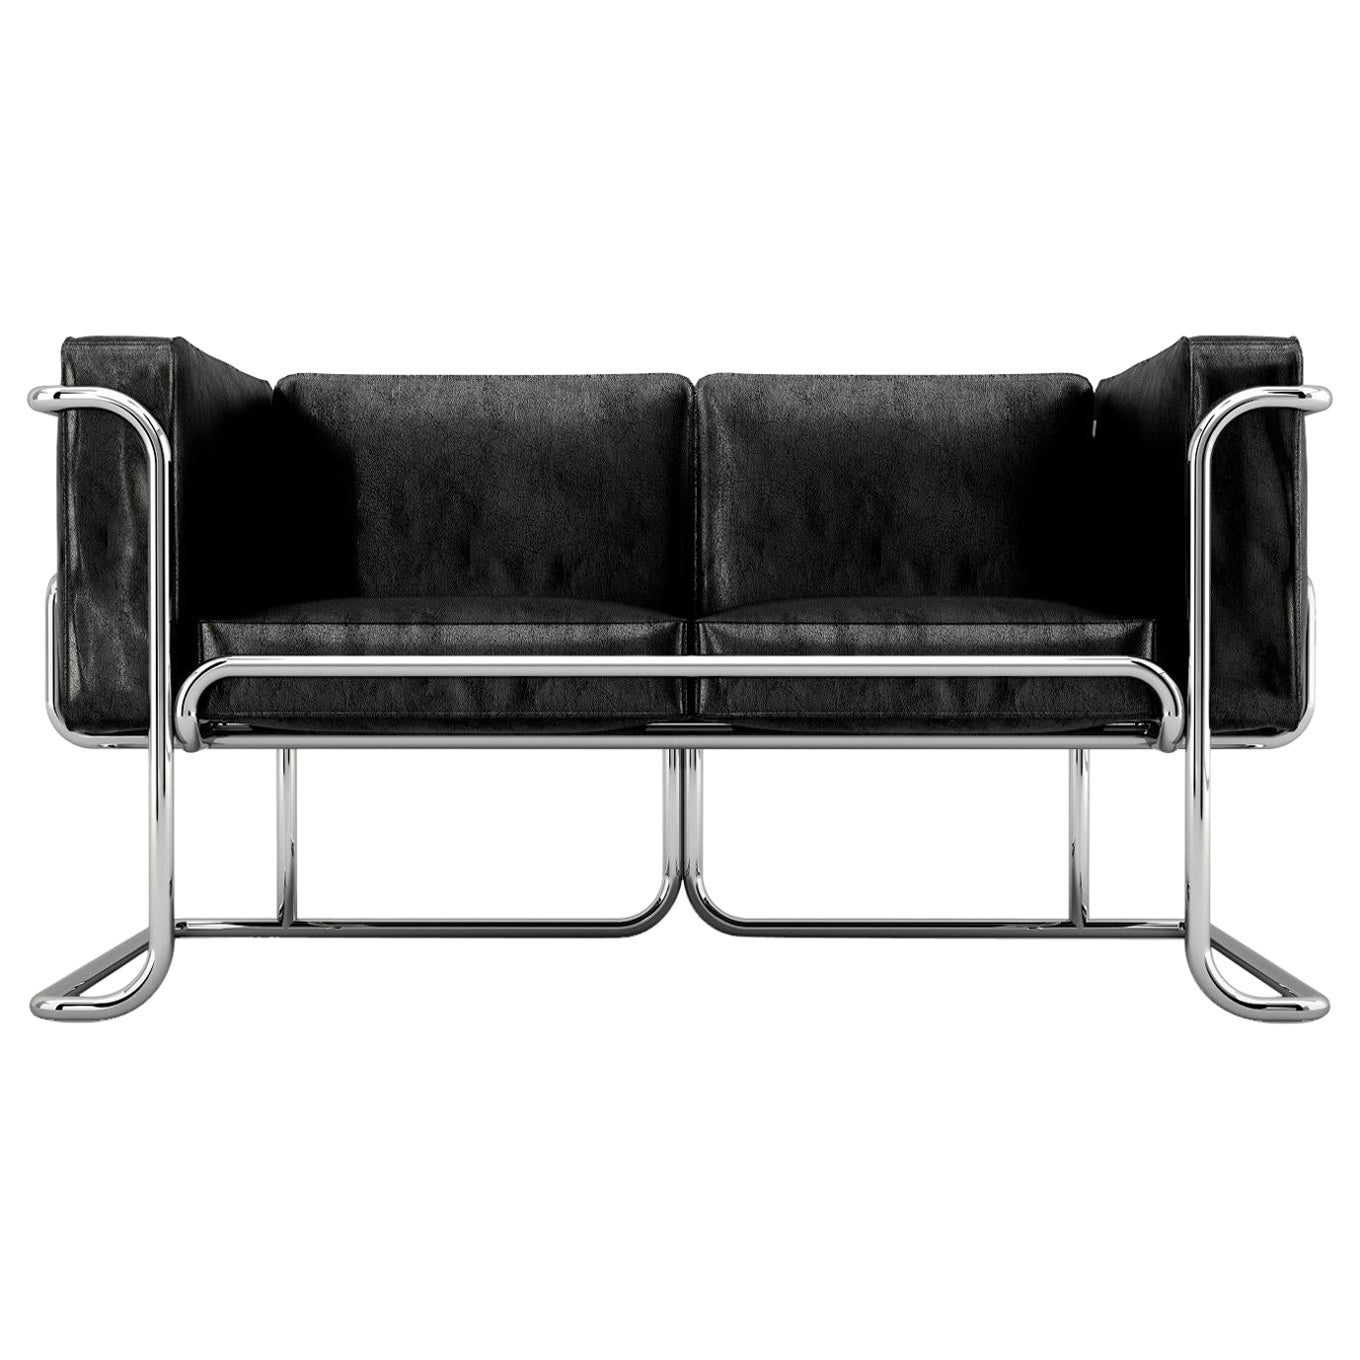 Lotus 2-Sitz-Sofa – modernes schwarzes Ledersofa mit Edelstahlbeinen